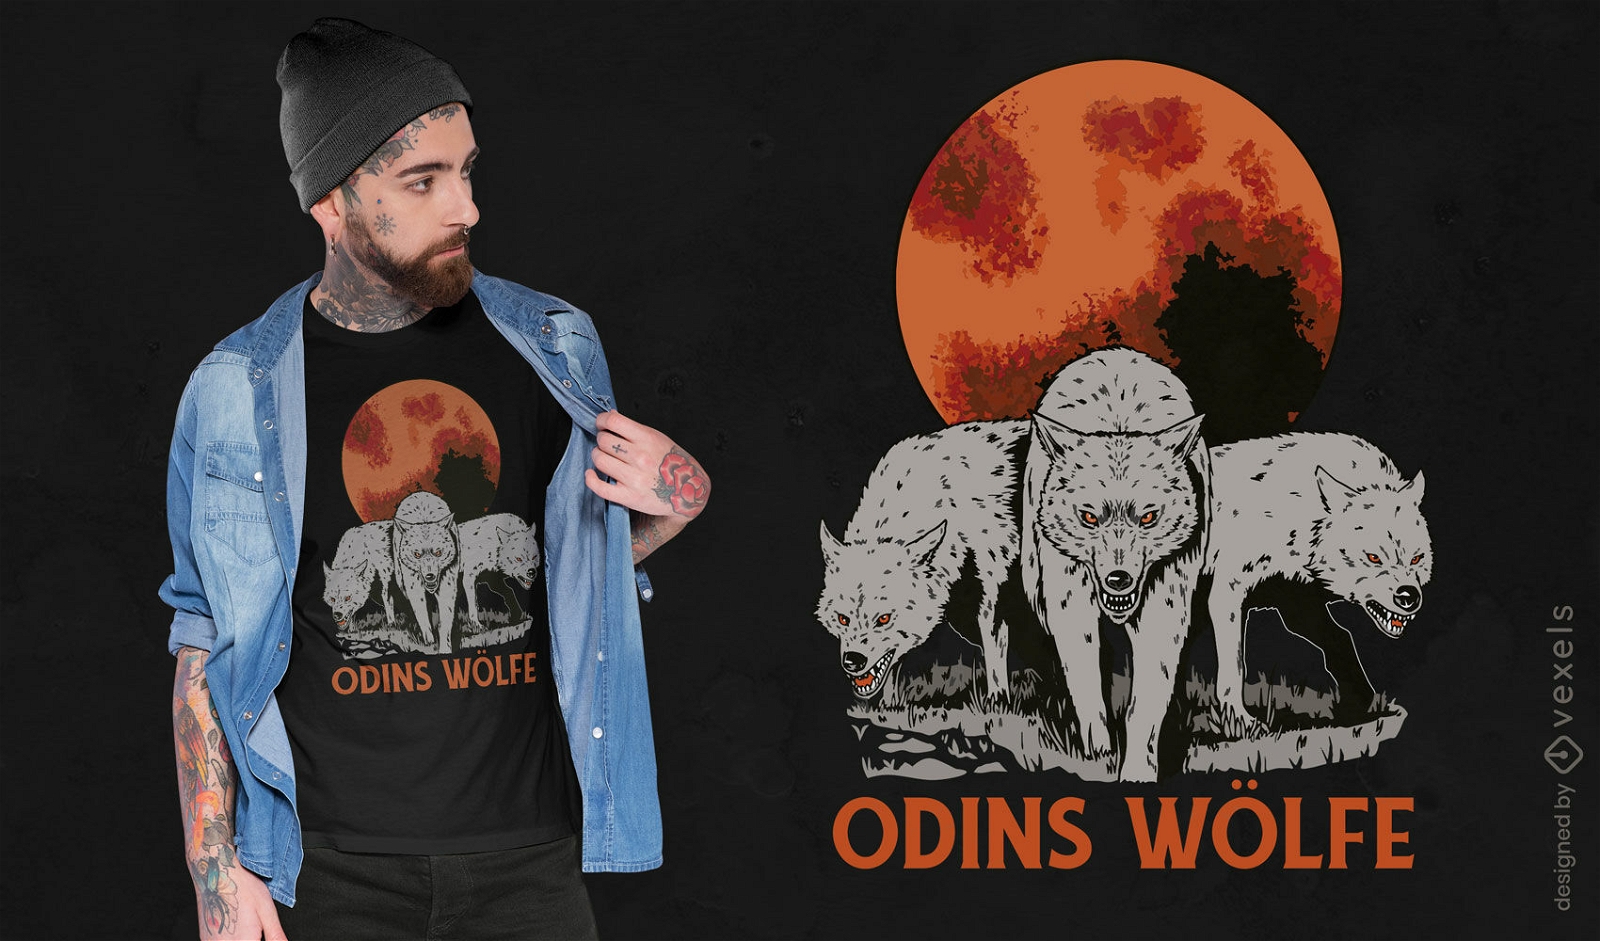 Odins wolf t-shirt design